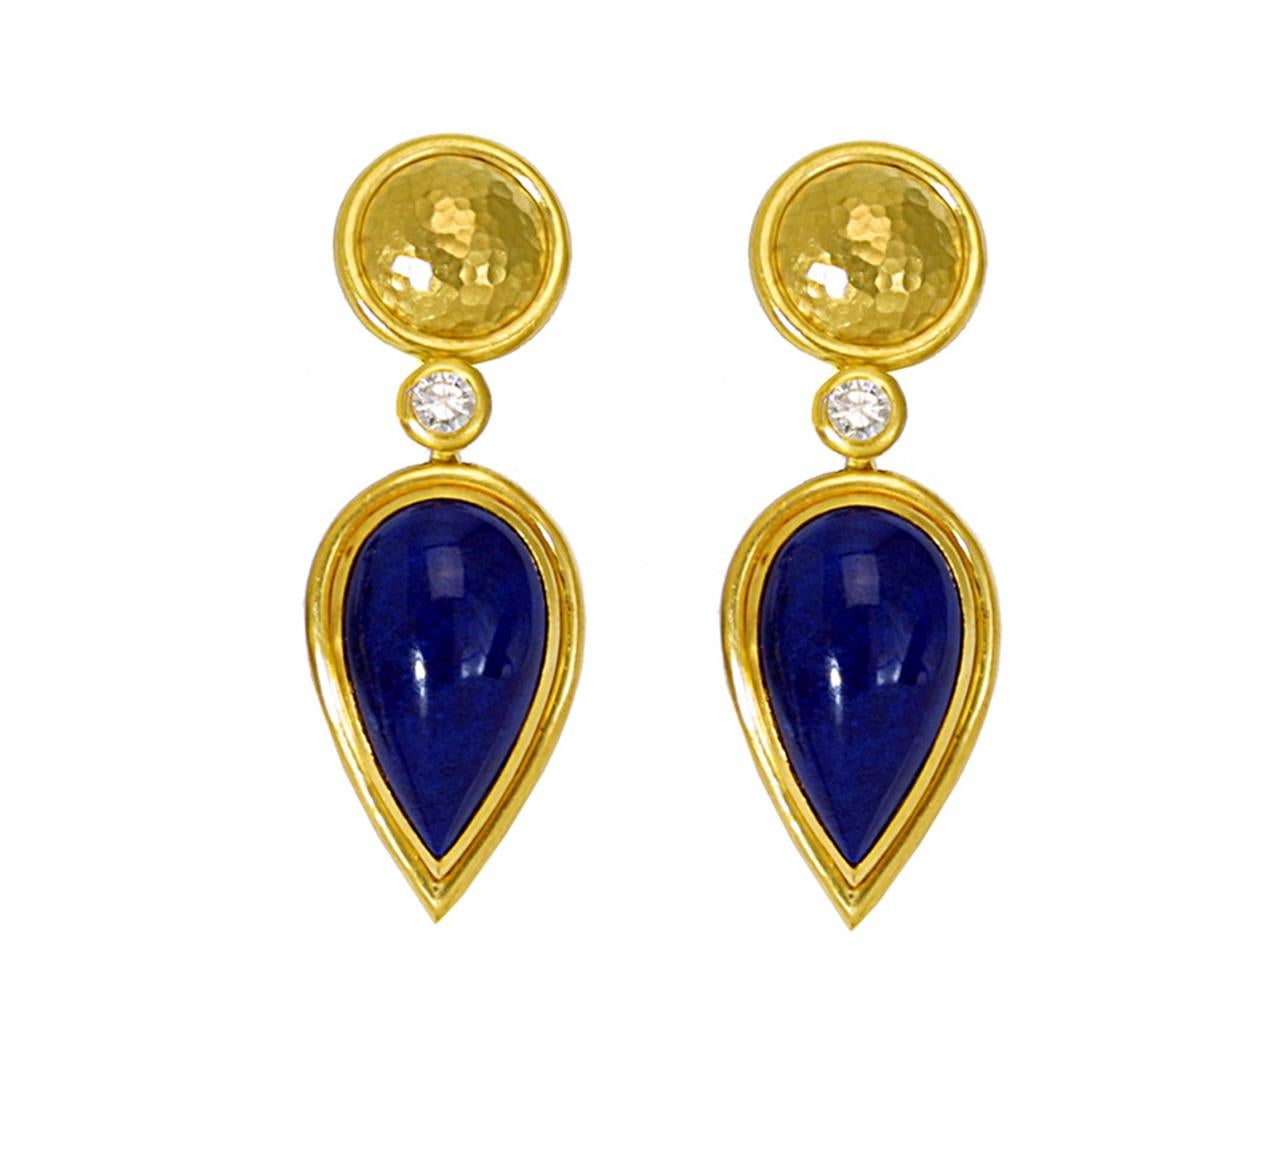 Ein Paar handgefertigte Tropfenohrringe aus 22 Karat gehämmertem Gelbgold mit wunderschönem Lapis Lazulis und 2 Diamanten 0,7 ct. Sie sehen sehr elegant und auffallend aus. Tragen Sie sie zu einem spektakulären Ereignis oder einfach, wenn Sie sich